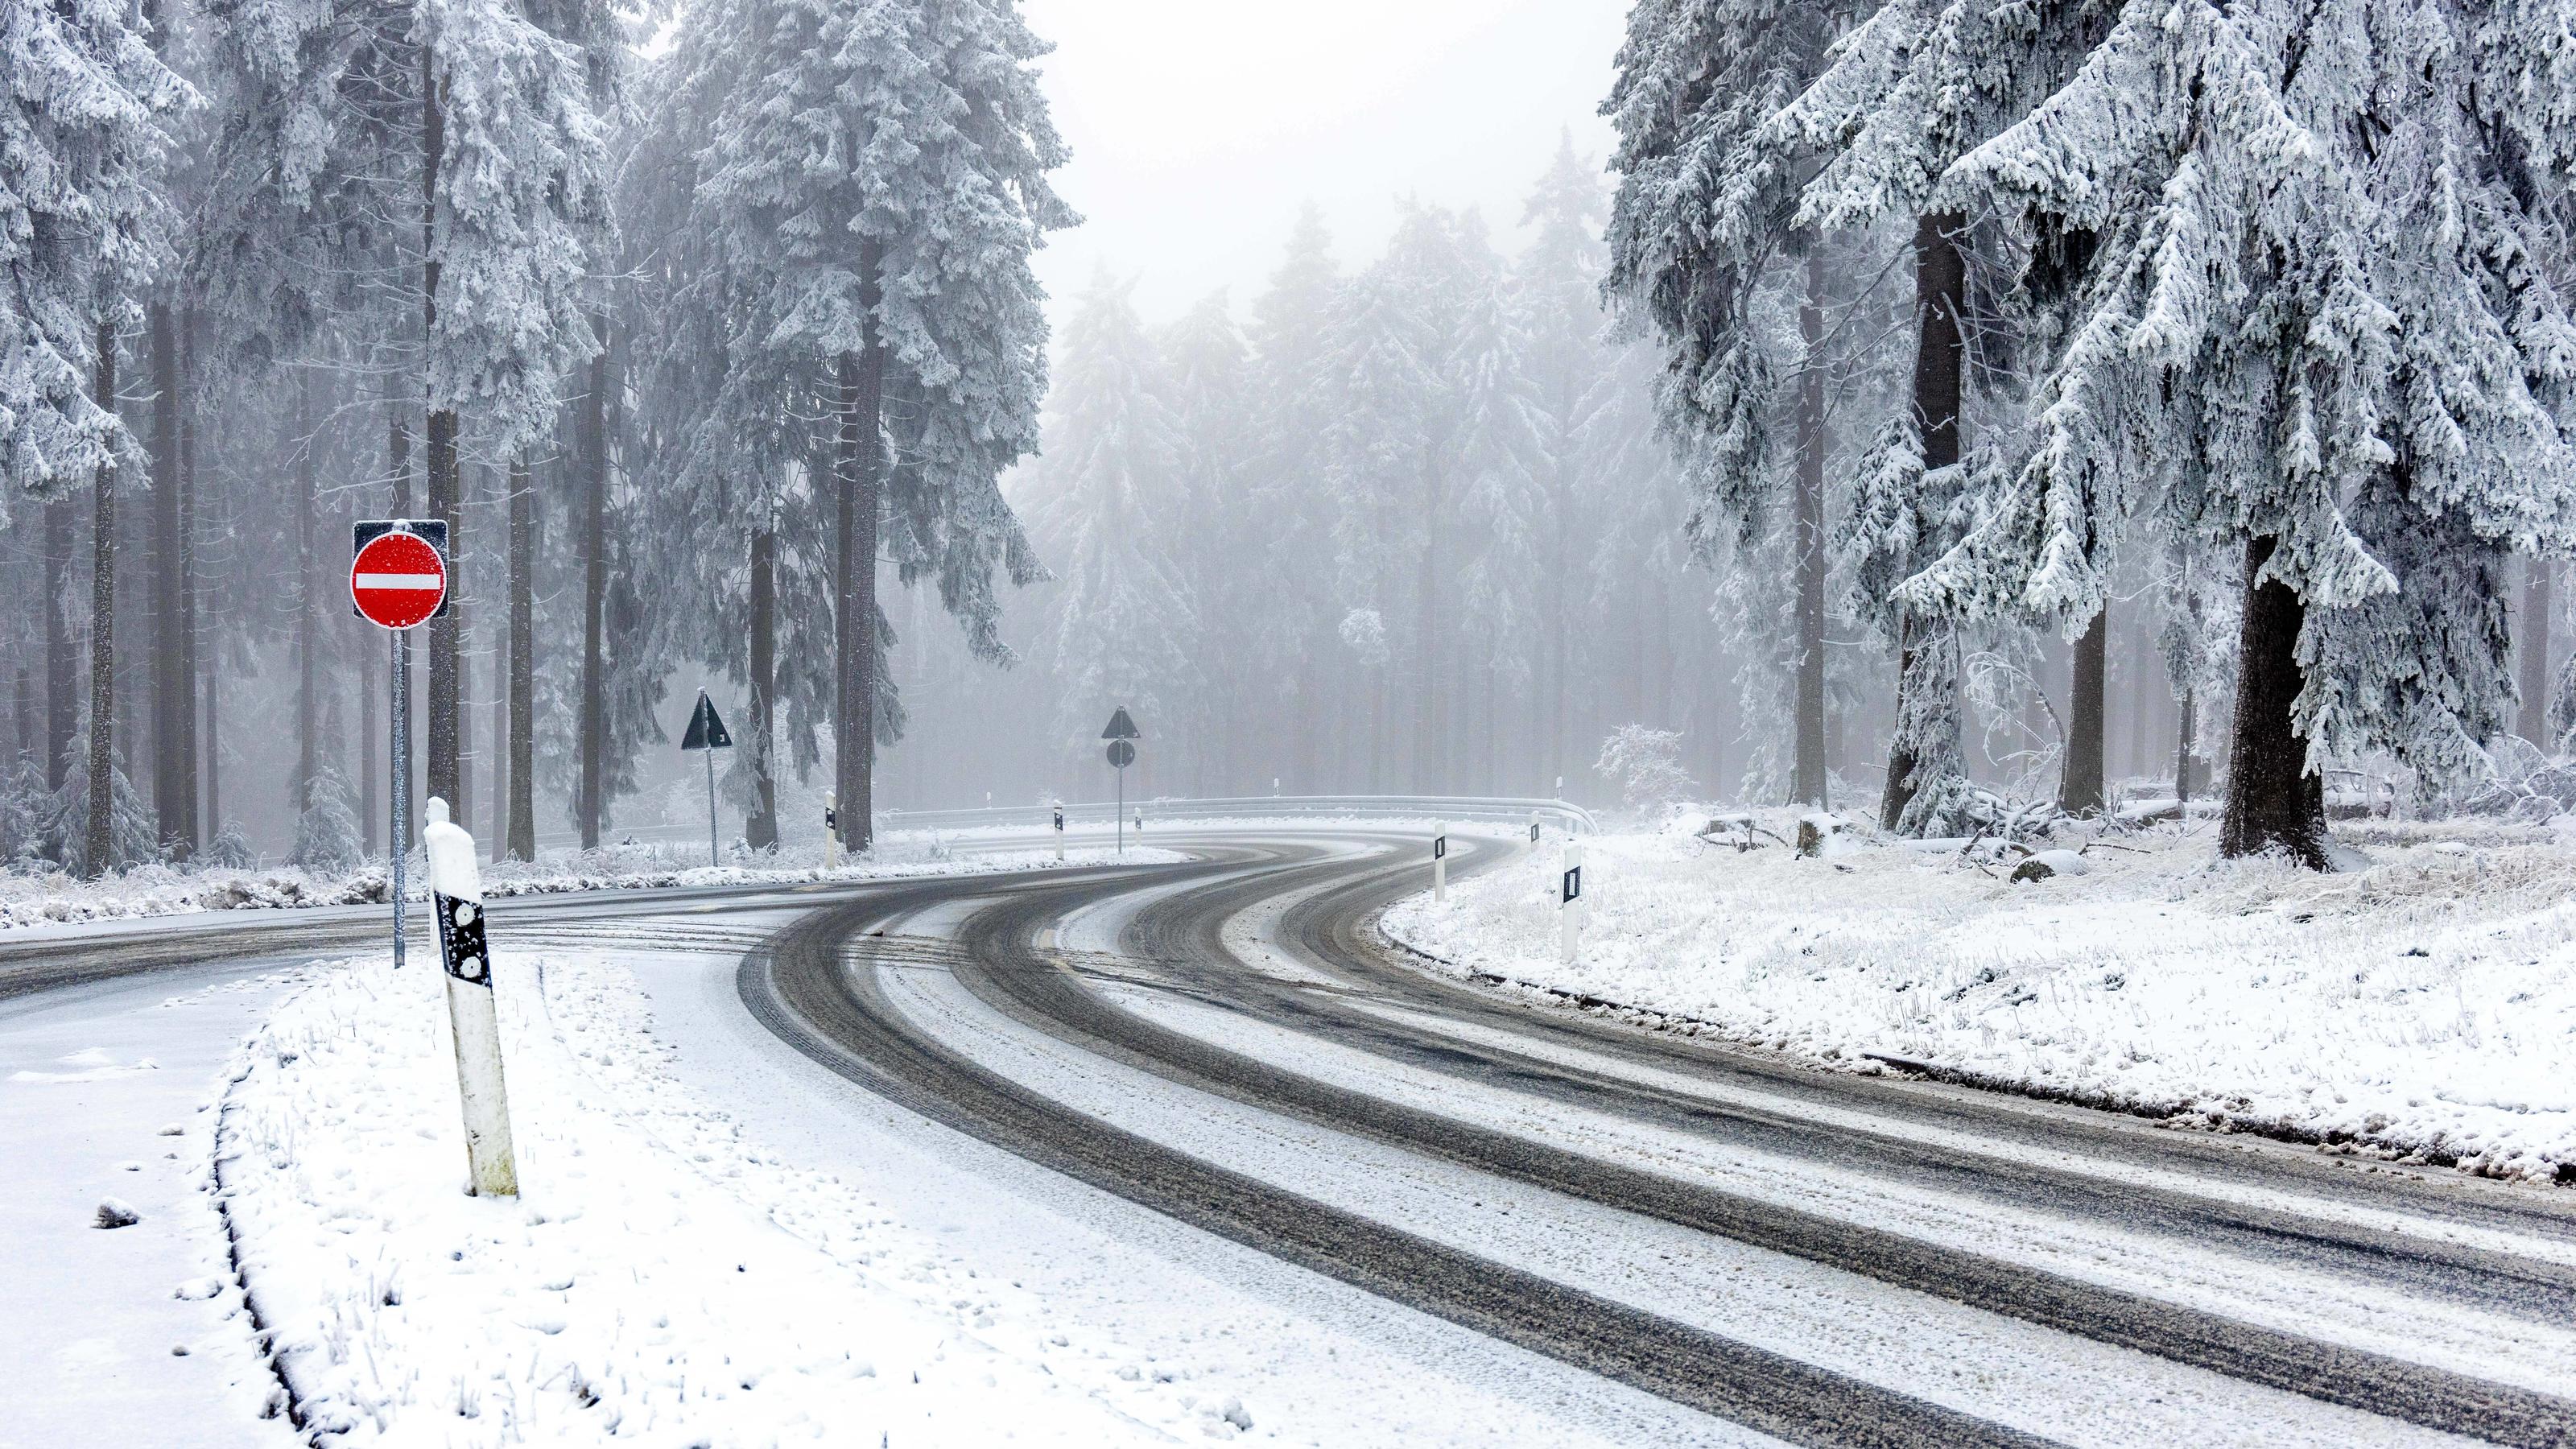 Schnee im Taunus Winterlich zeigt sich die Landschaft am Großen Feldberg im Taunus nach einem Schneeschauer und mit dickem Raureif an den Bäumen und Sträuchern.